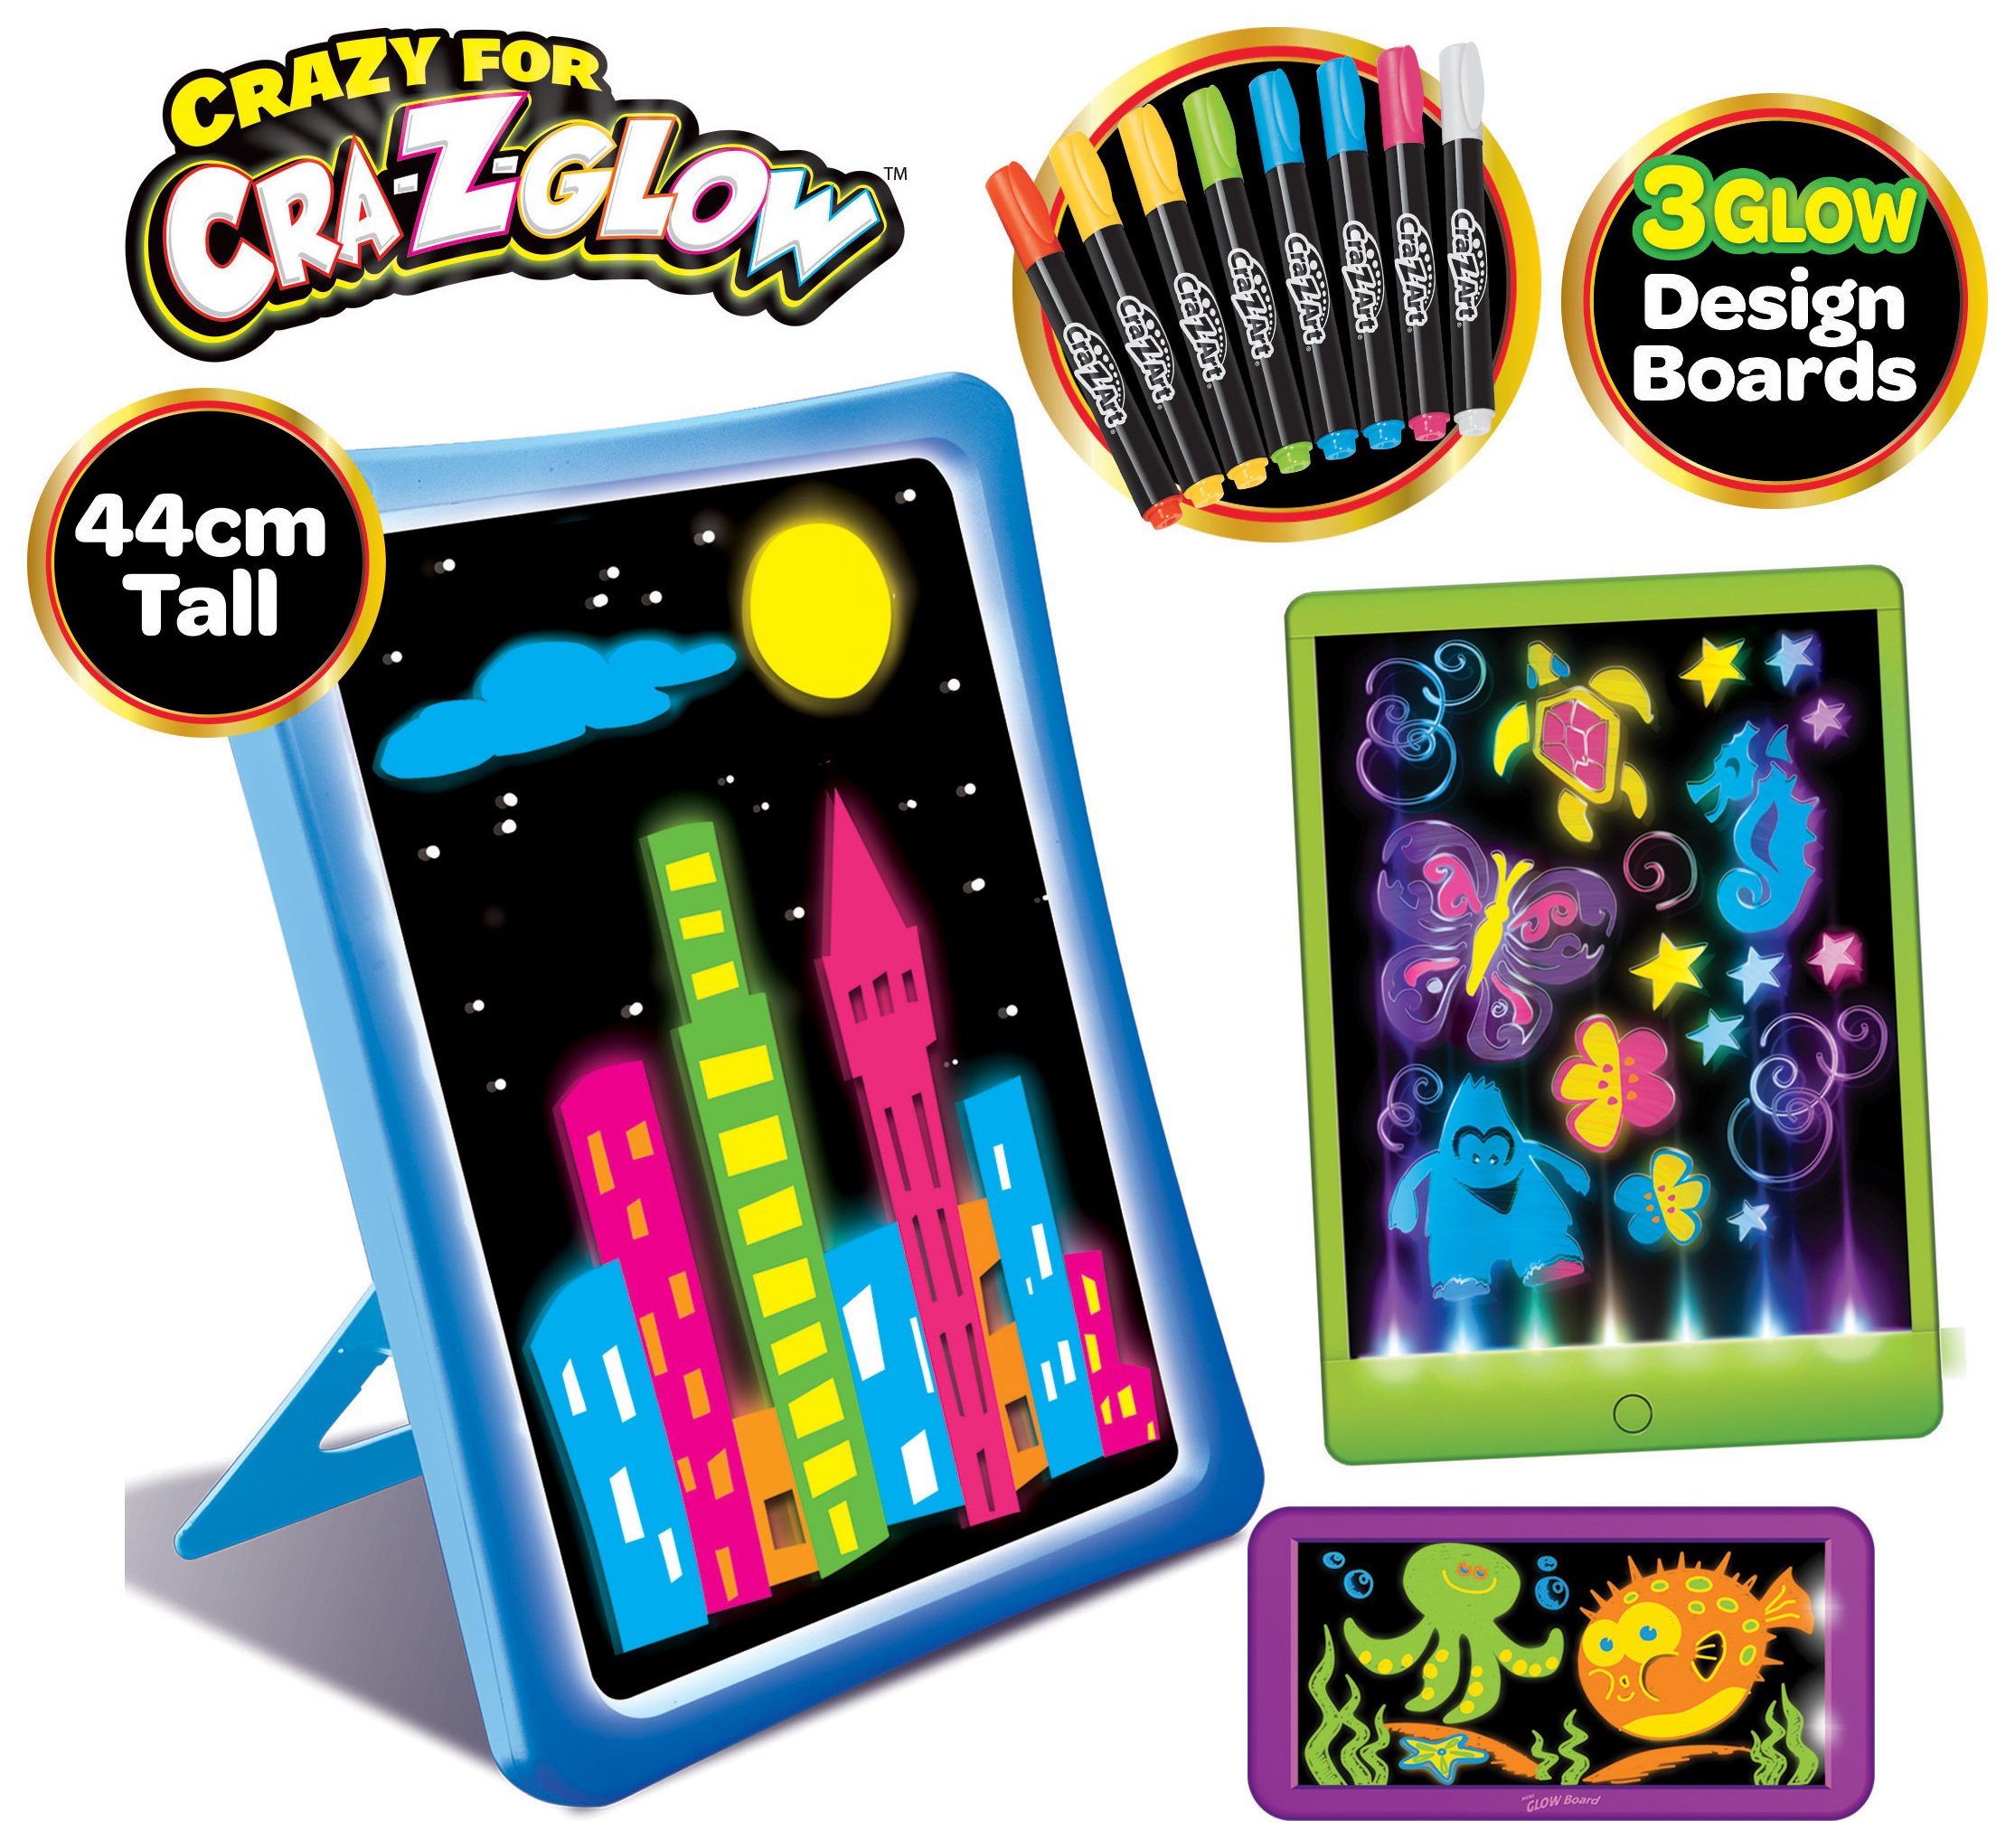 Cra-z-art Glow Board Set. Reviews